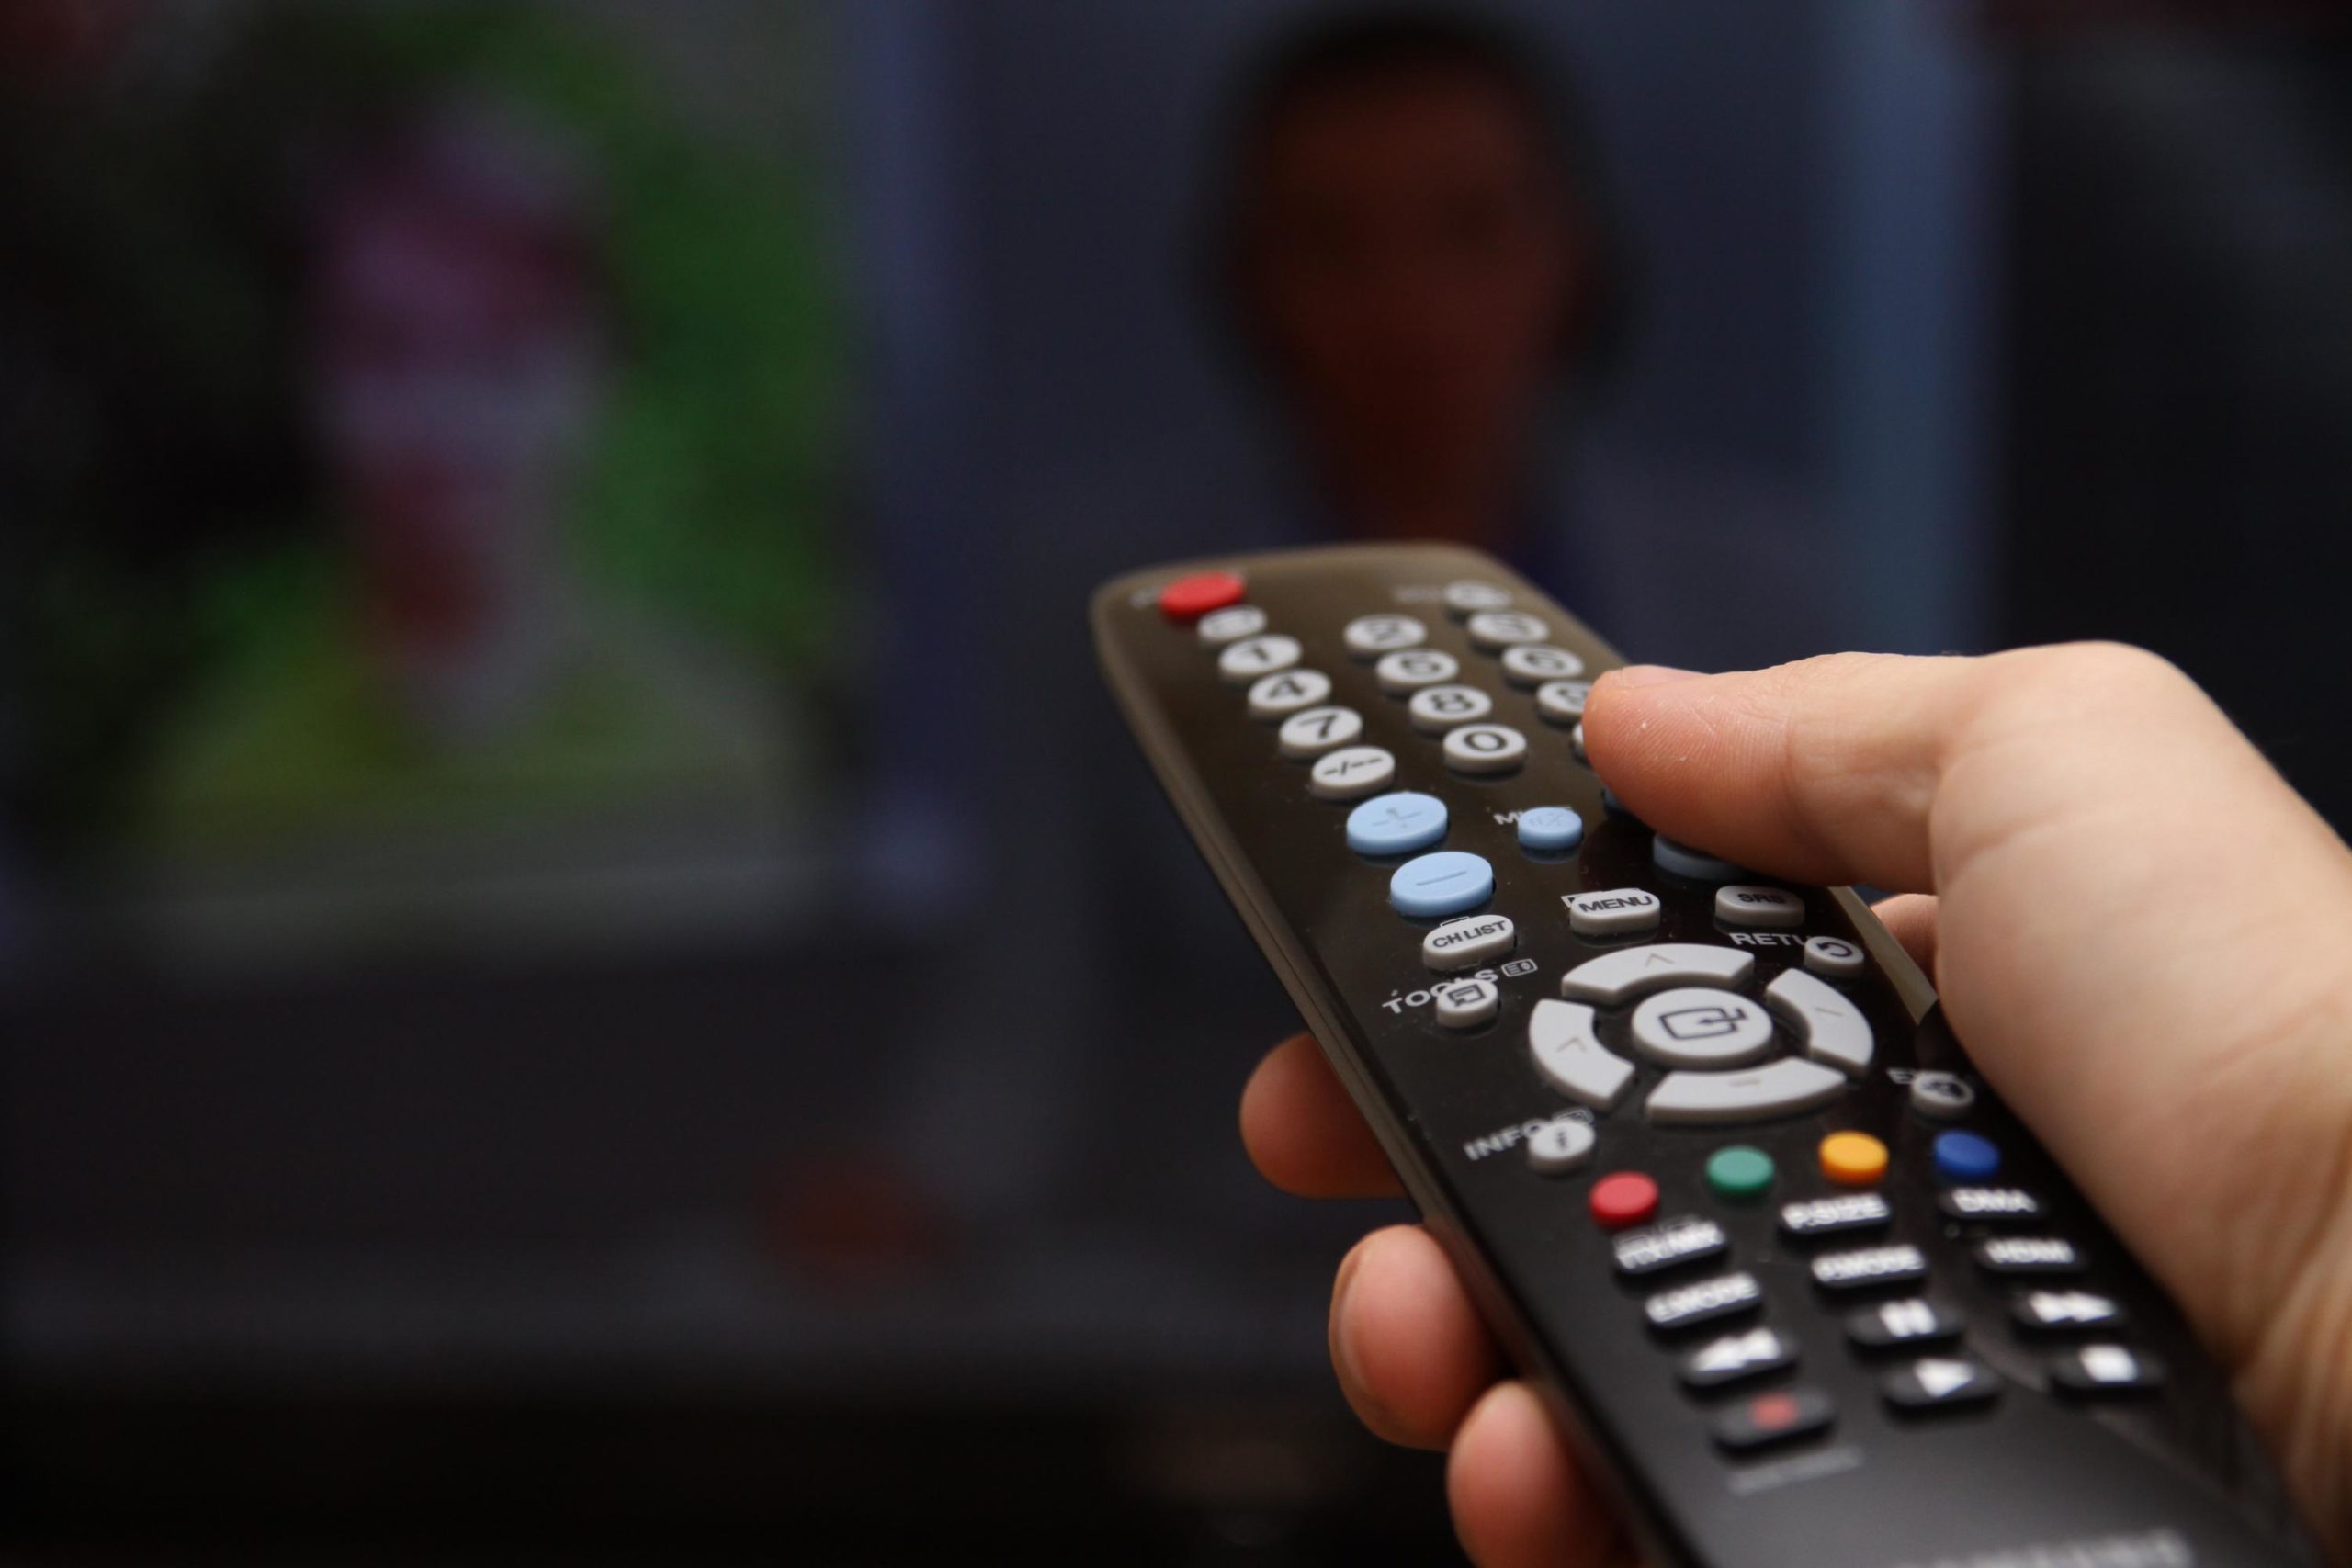 Poradie najlepších univerzálnych diaľkových ovládačov pre TV v roku 2020